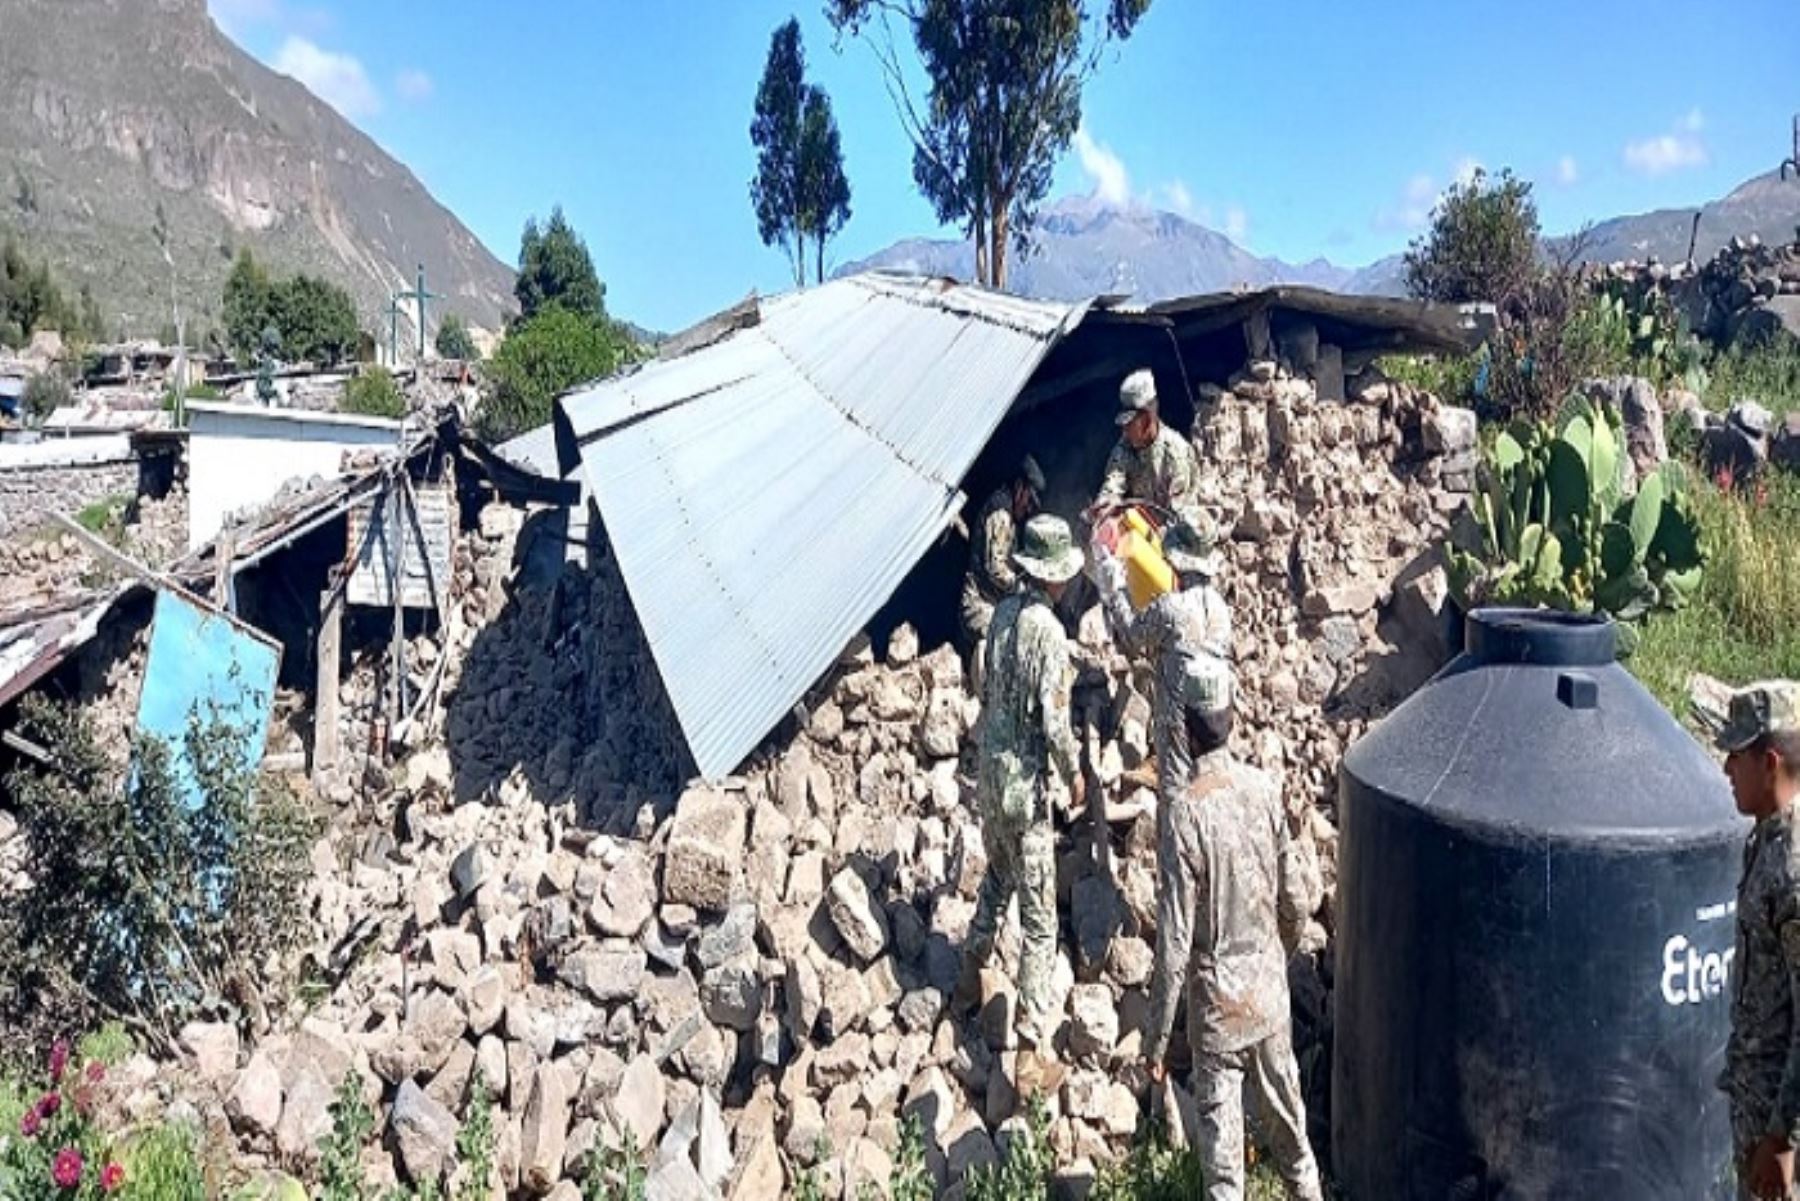 Las paredes, muros y techos de calamina de vivienda cayeron a consecuencia de los reiterados sismos reportados en el lugar. Foto: ANDINA/Difusión